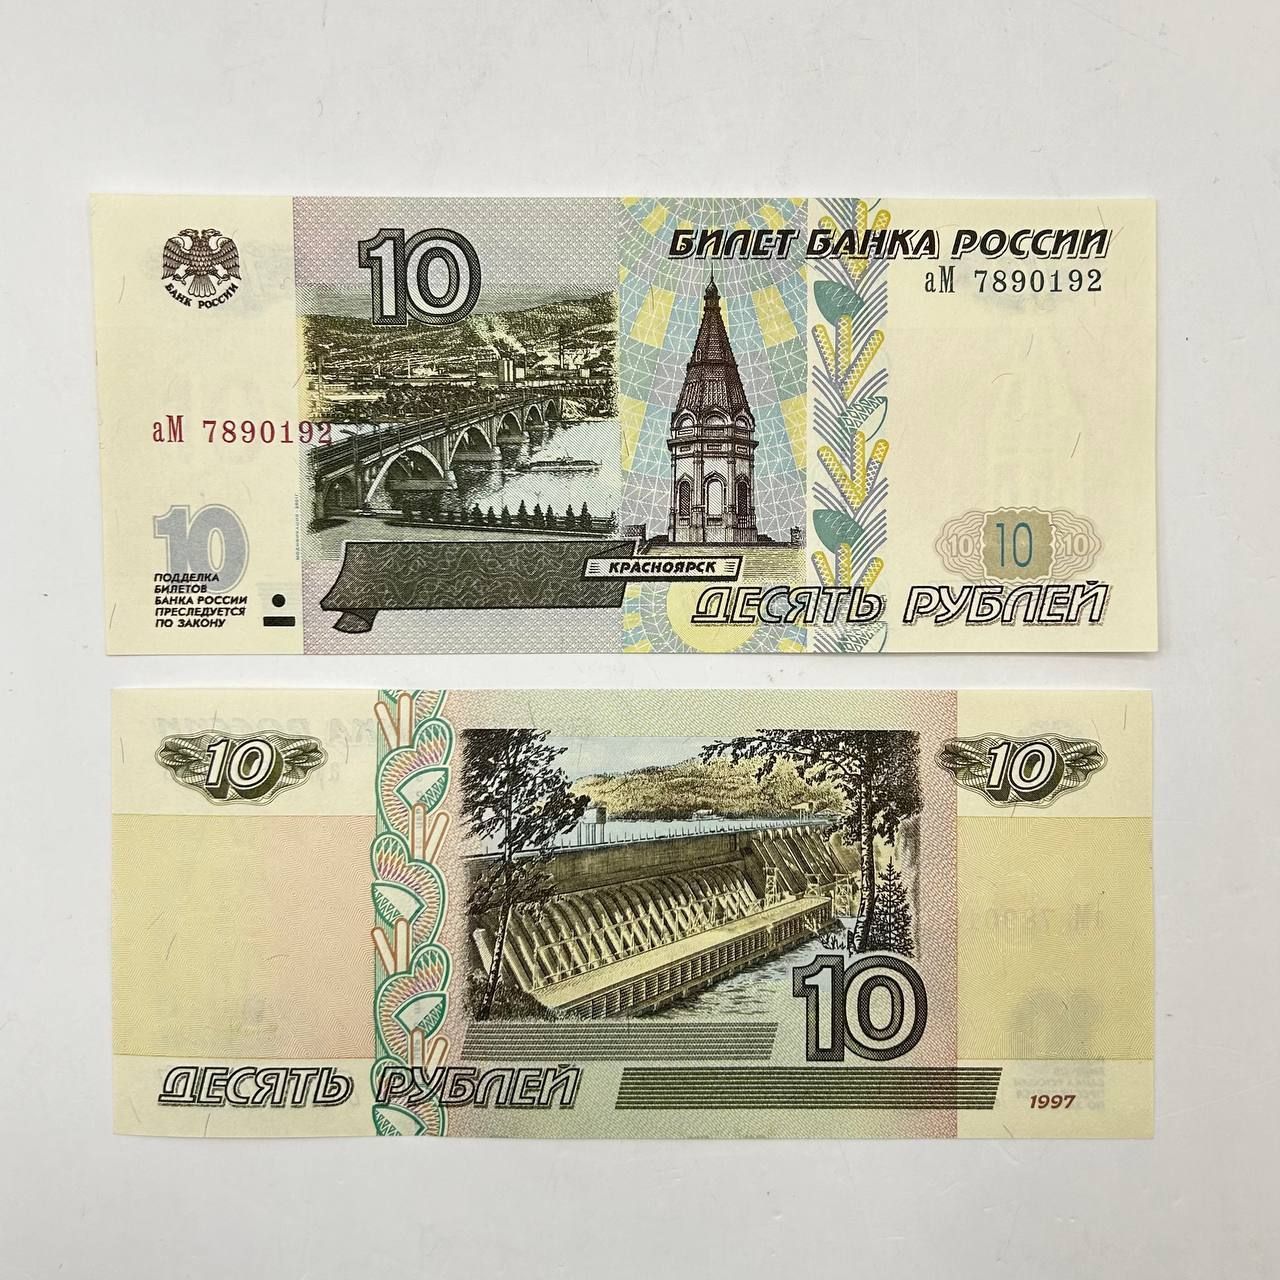 Купюры 10 рублей 1997. Купюры модификации 2004 года. Двадцать рублей 1997. Деноминация 1997.